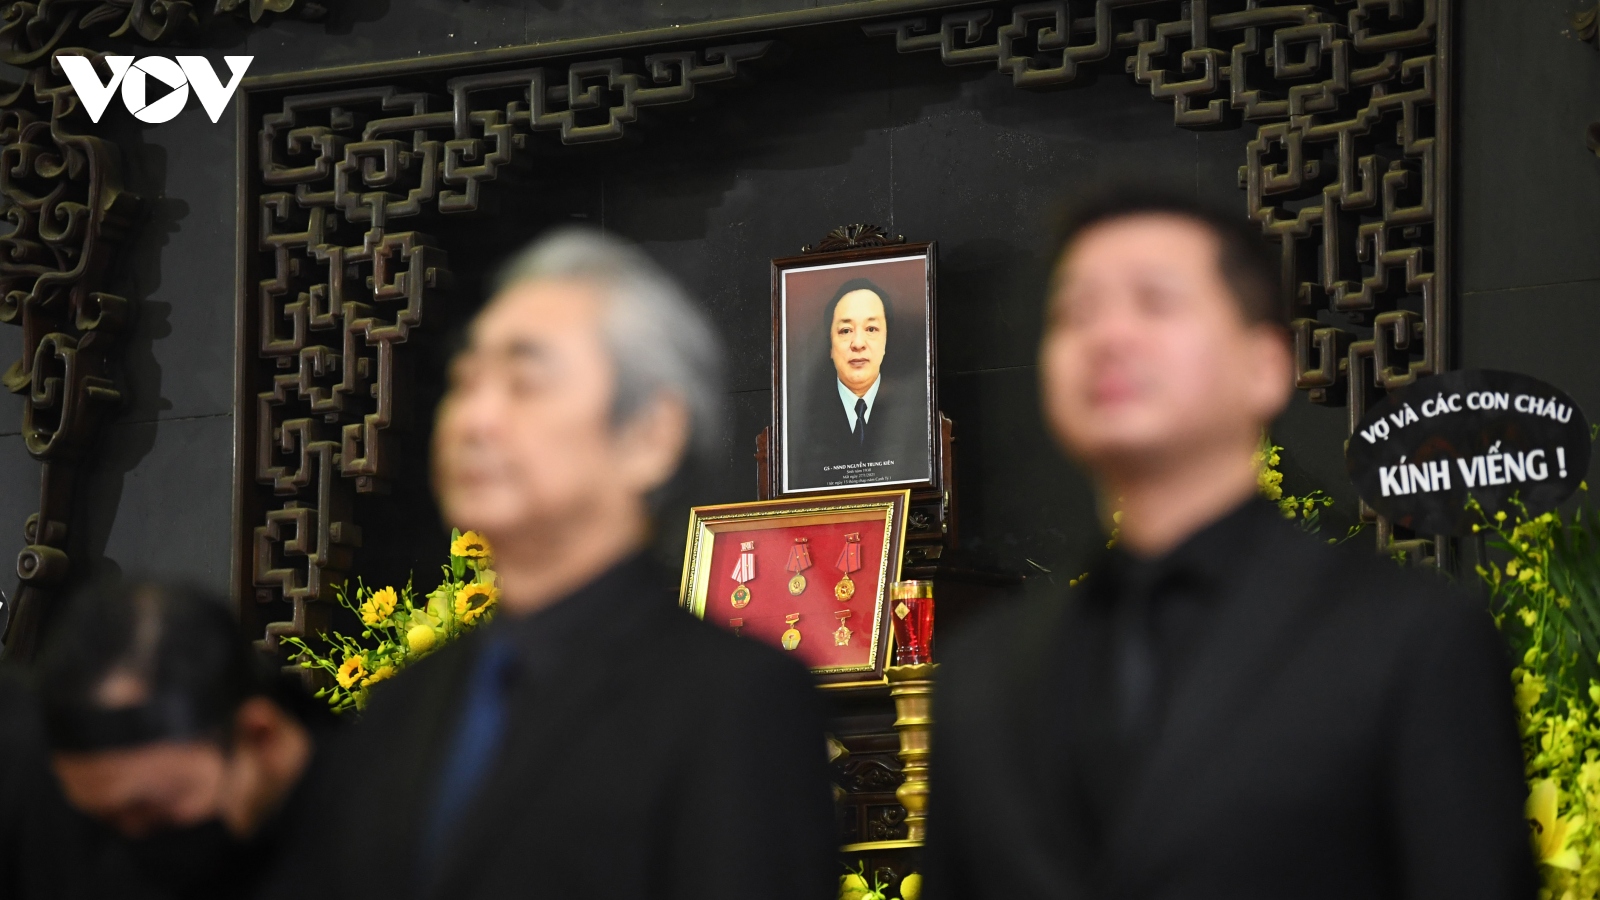 Chùm ảnh: Xúc động thời khắc tiễn biệt NSND Trung Kiên về nơi an nghỉ cuối cùng